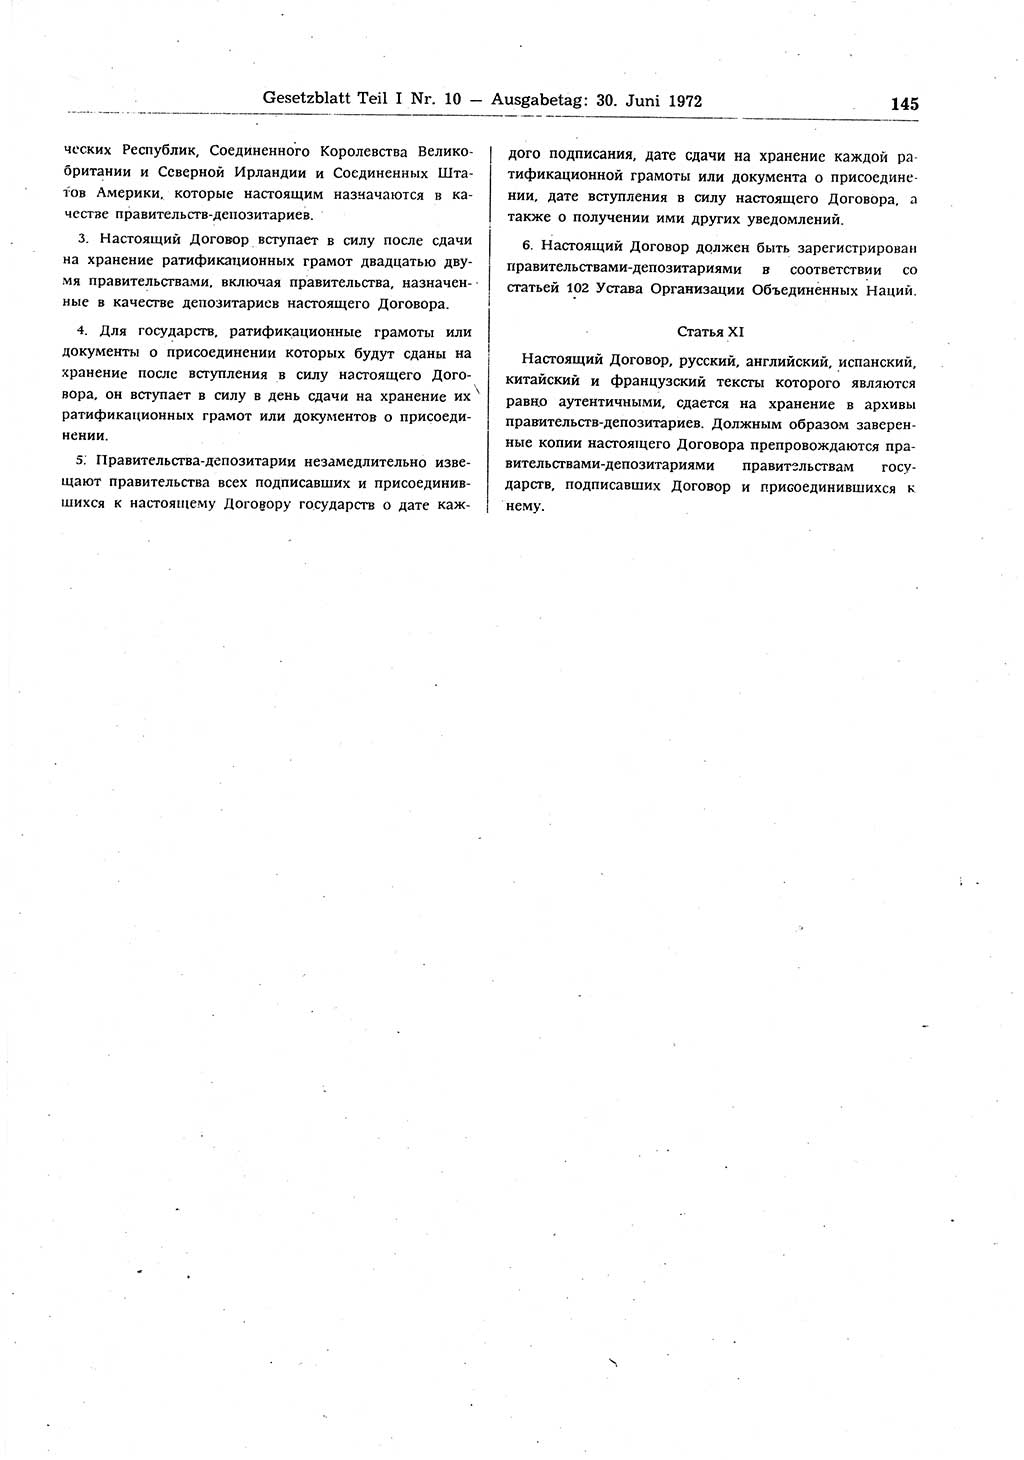 Gesetzblatt (GBl.) der Deutschen Demokratischen Republik (DDR) Teil Ⅰ 1972, Seite 145 (GBl. DDR Ⅰ 1972, S. 145)